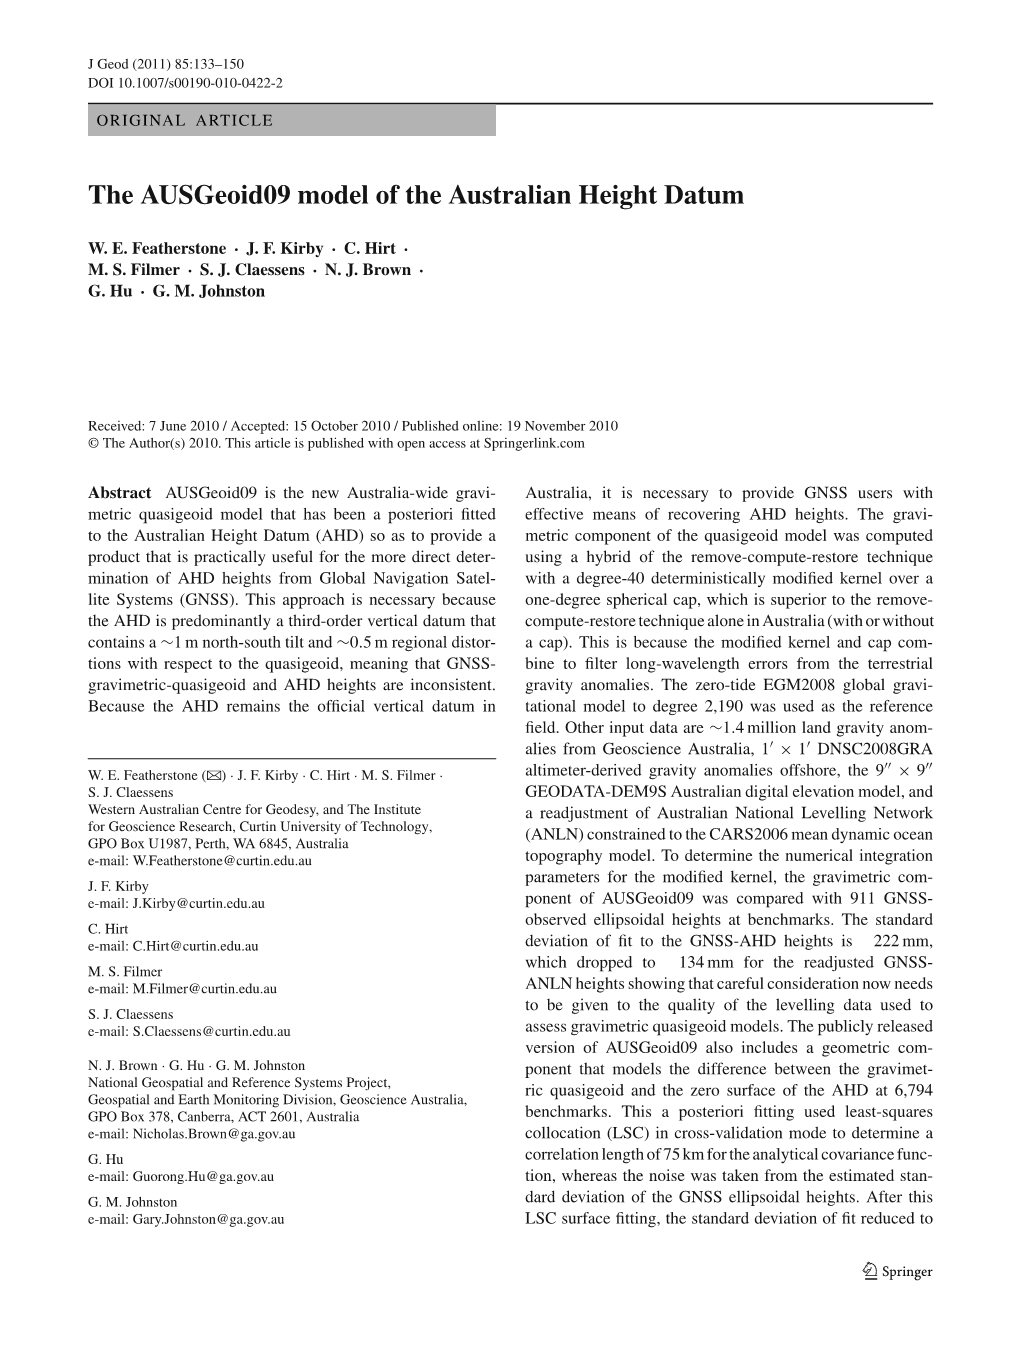 The Ausgeoid09 Model of the Australian Height Datum